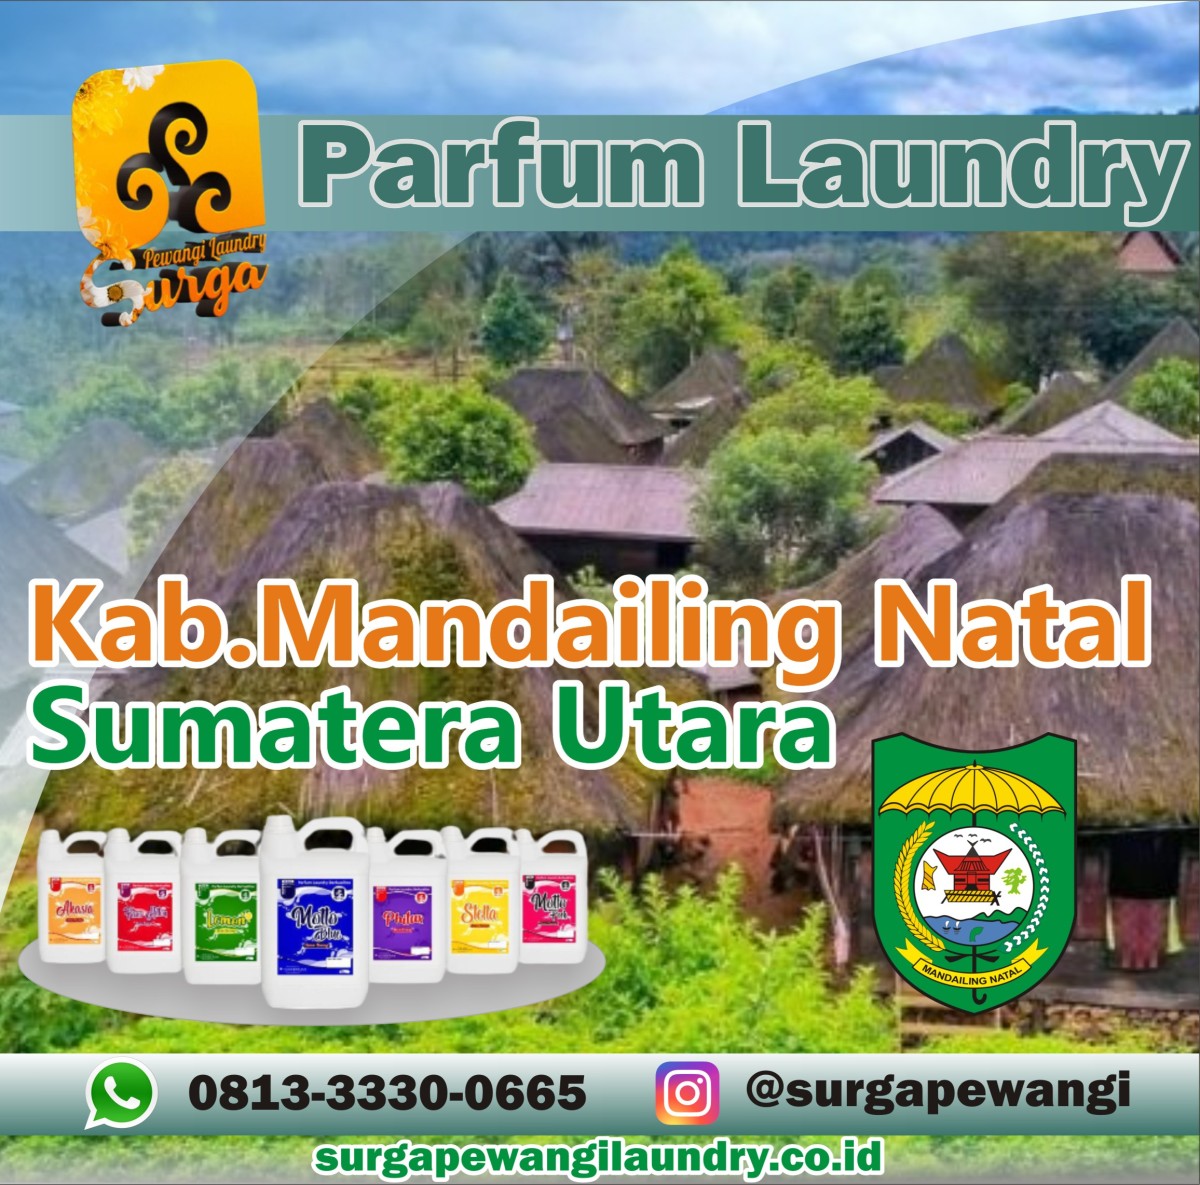 Parfum Laundry Mandailing Natal, Sumatera Utara